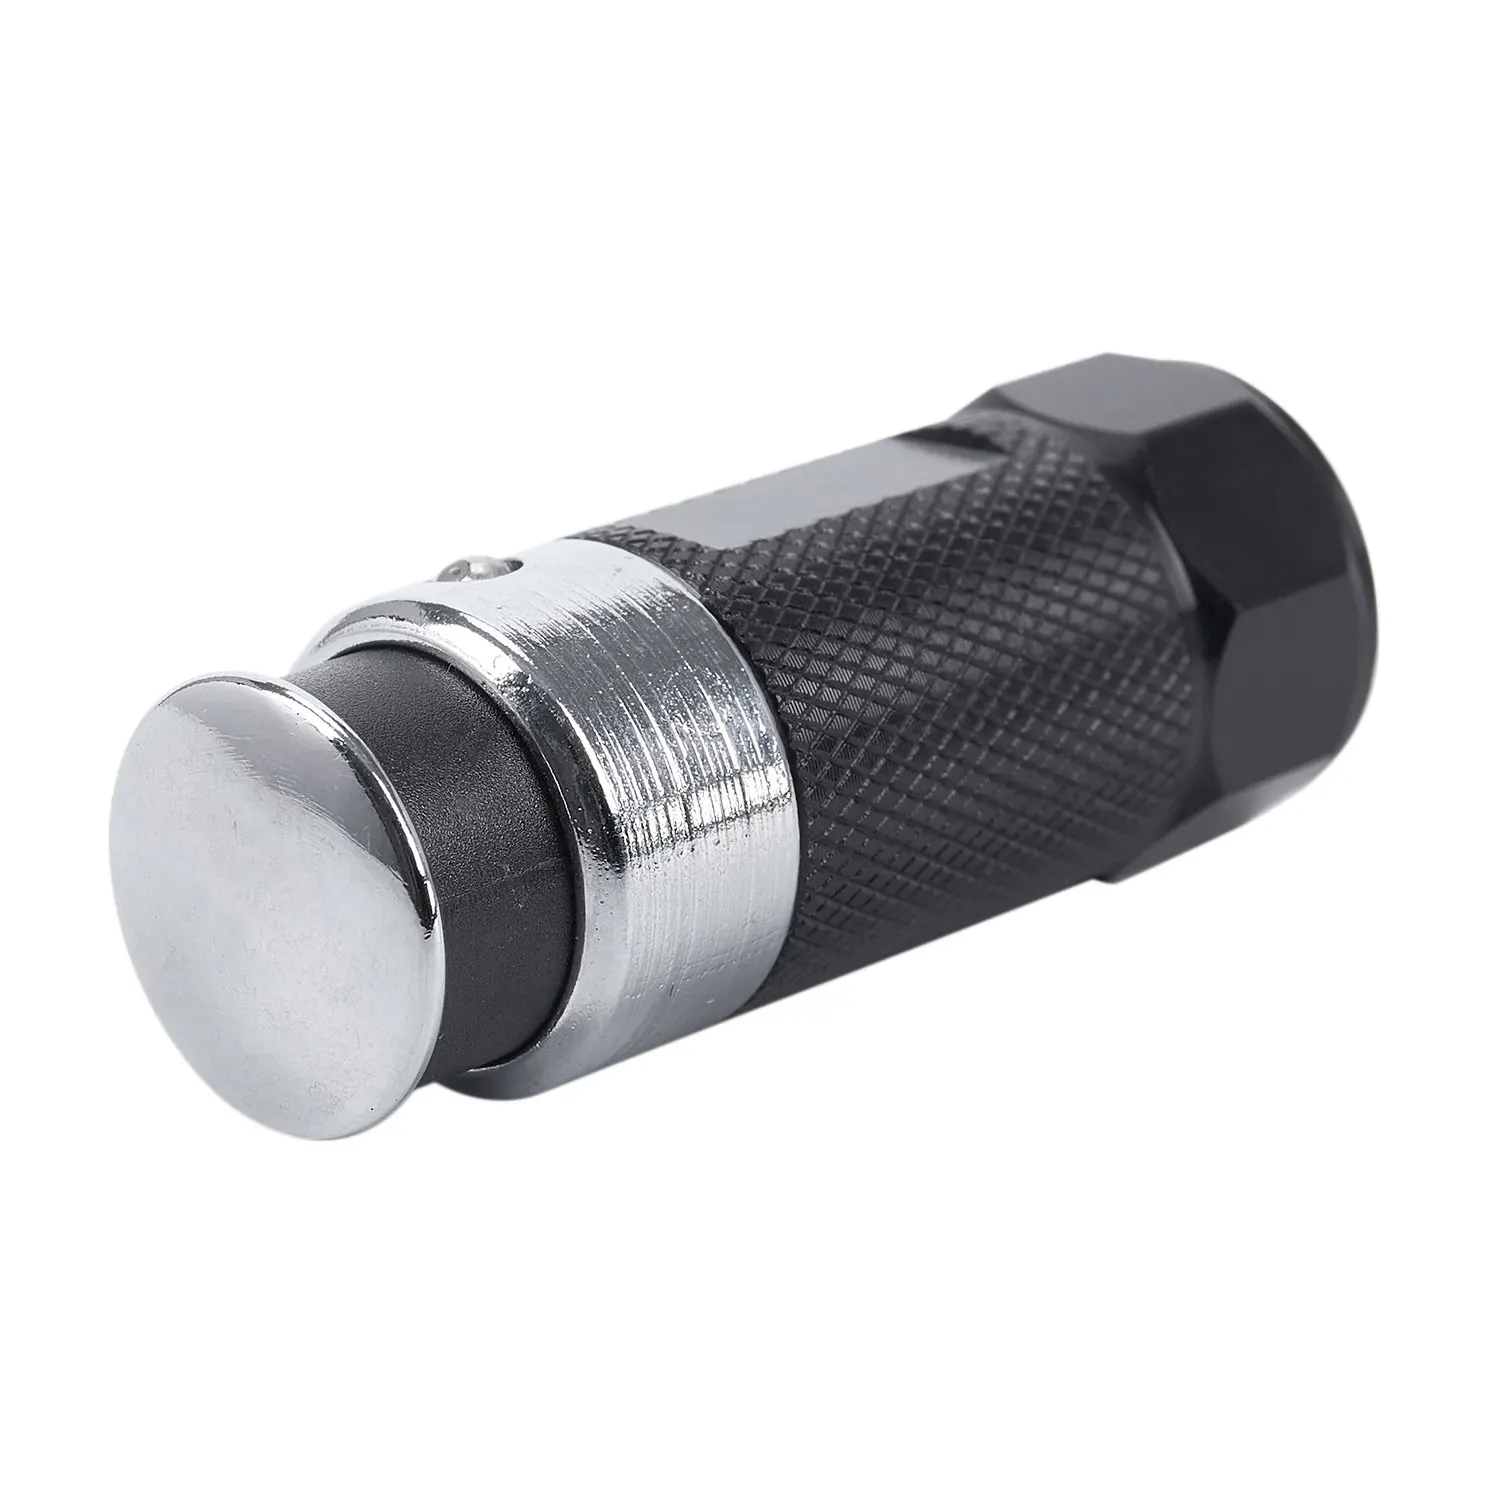 

1pcs Mini Led flashlights Car Cigarette Lighter led Rechargeable Flashlight